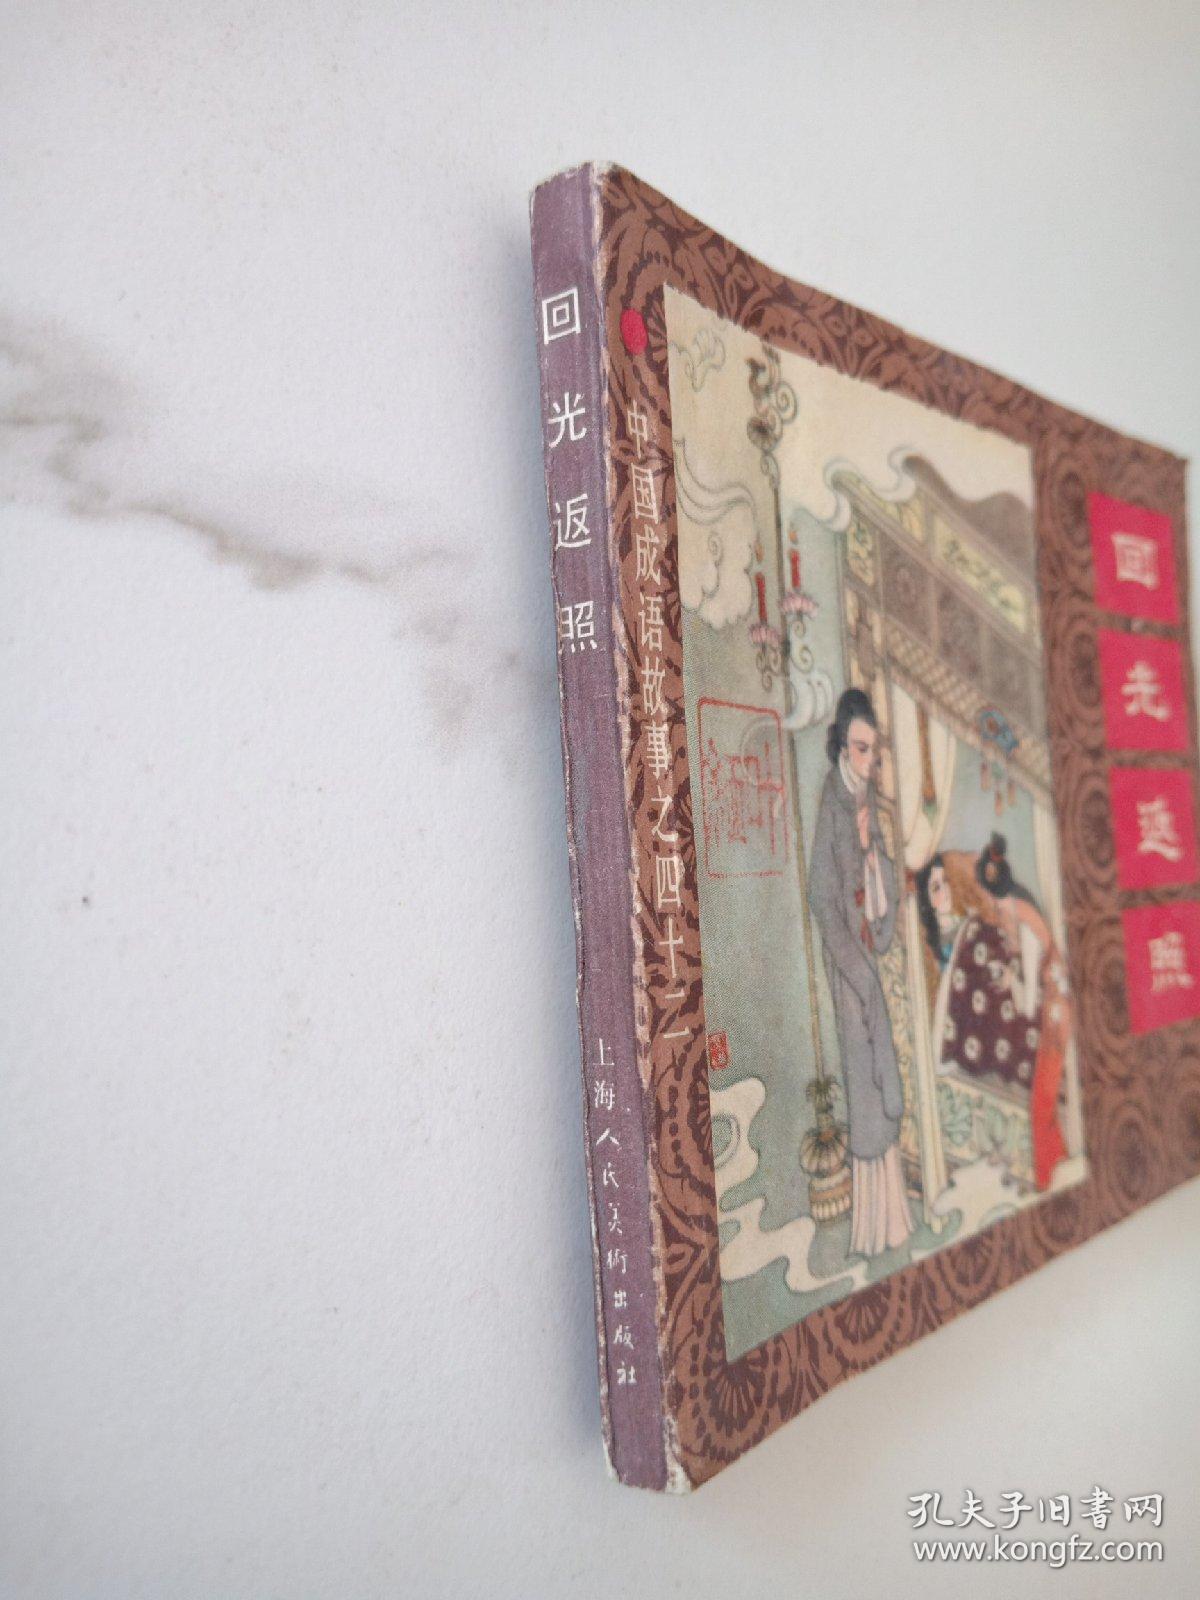 连环画【 回光返照 】中国成语故事之四十二   吴大成 绘  1983年一版一印 人美版